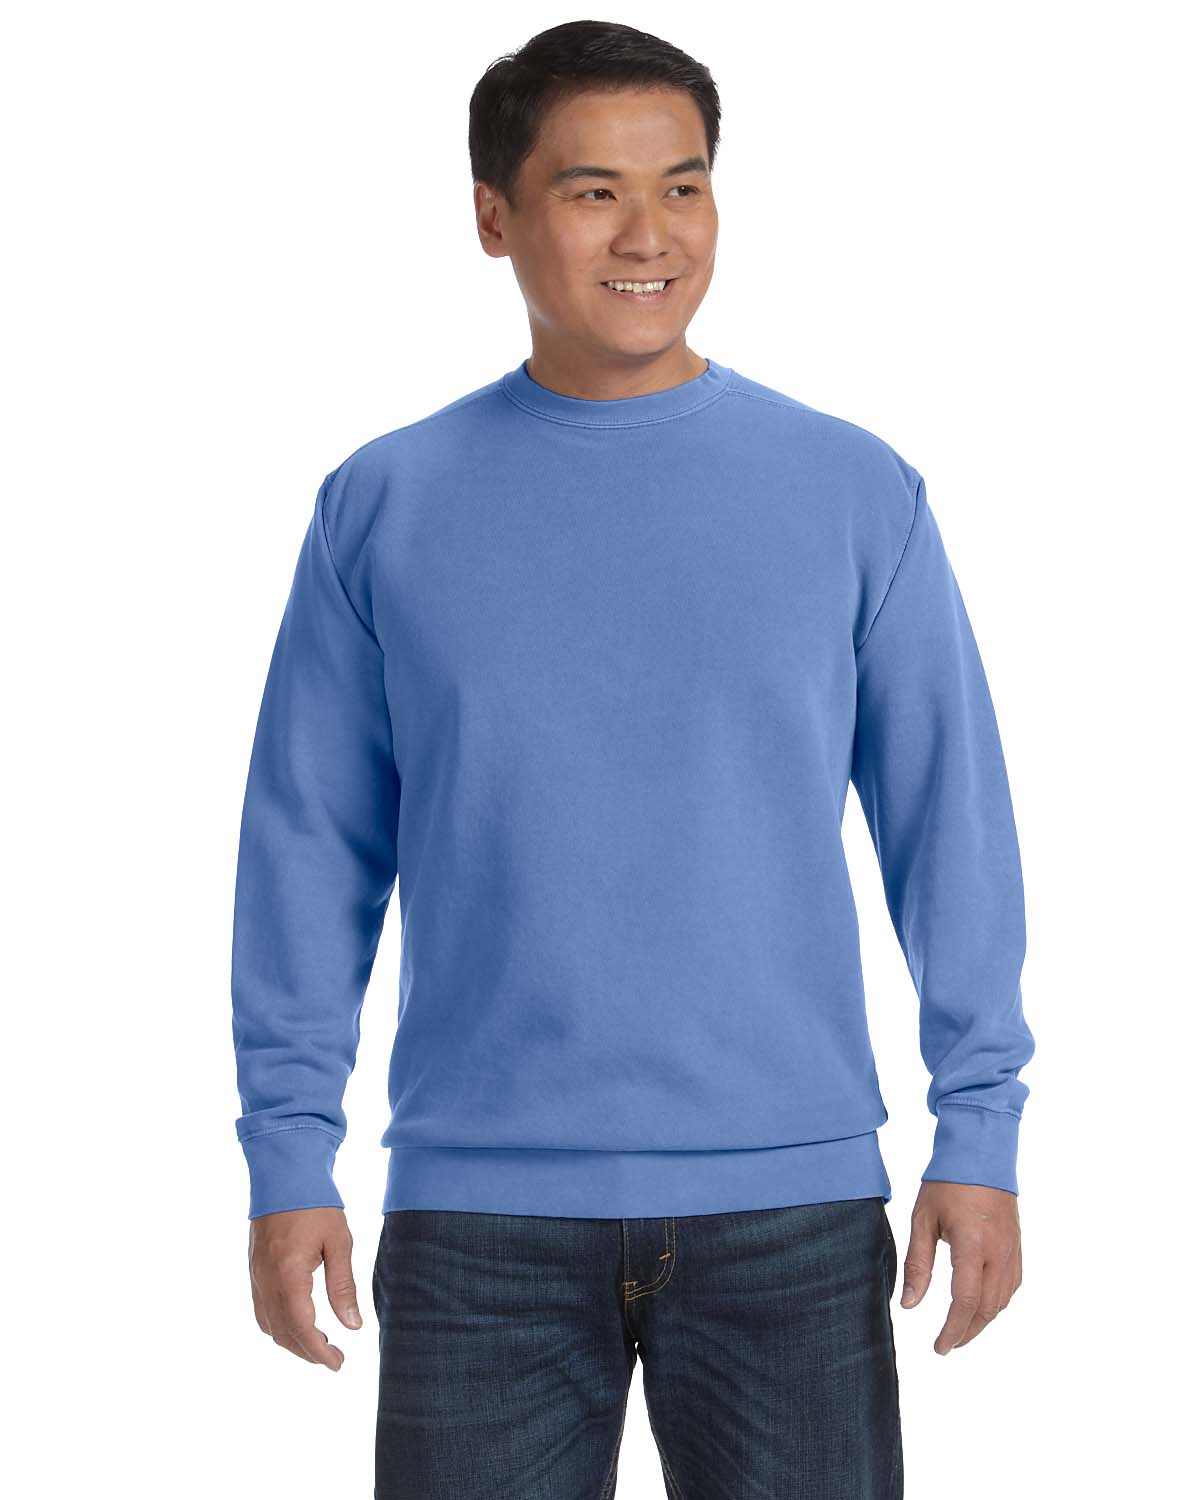 22 Best Crewneck Sweatshirts for Men 2023